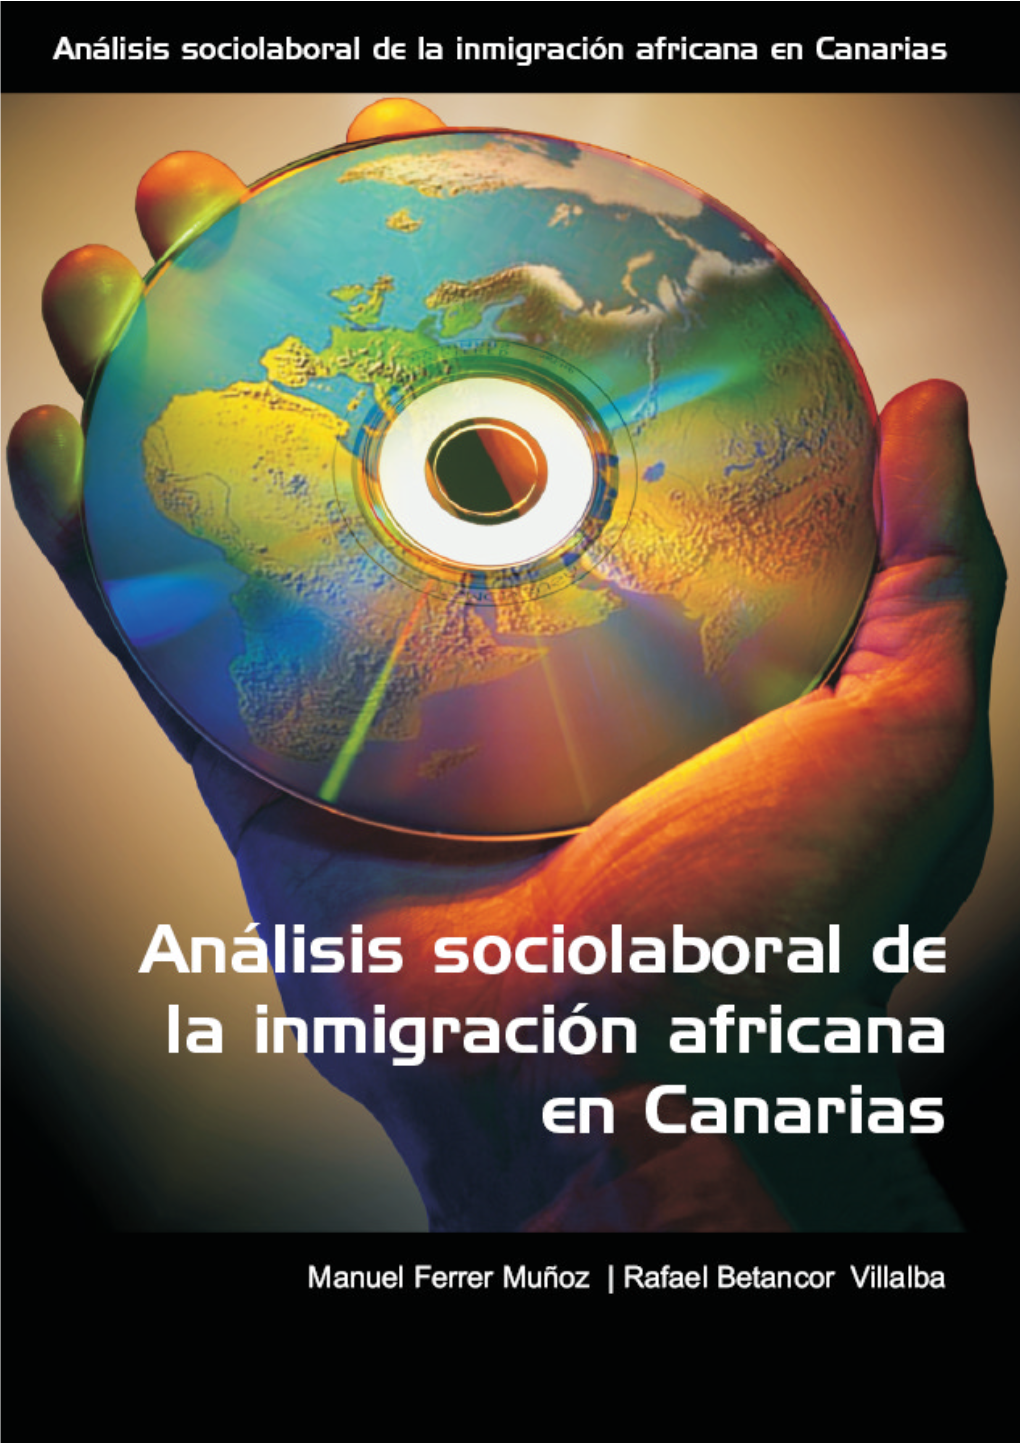 I. La Emigración Africana a Canarias